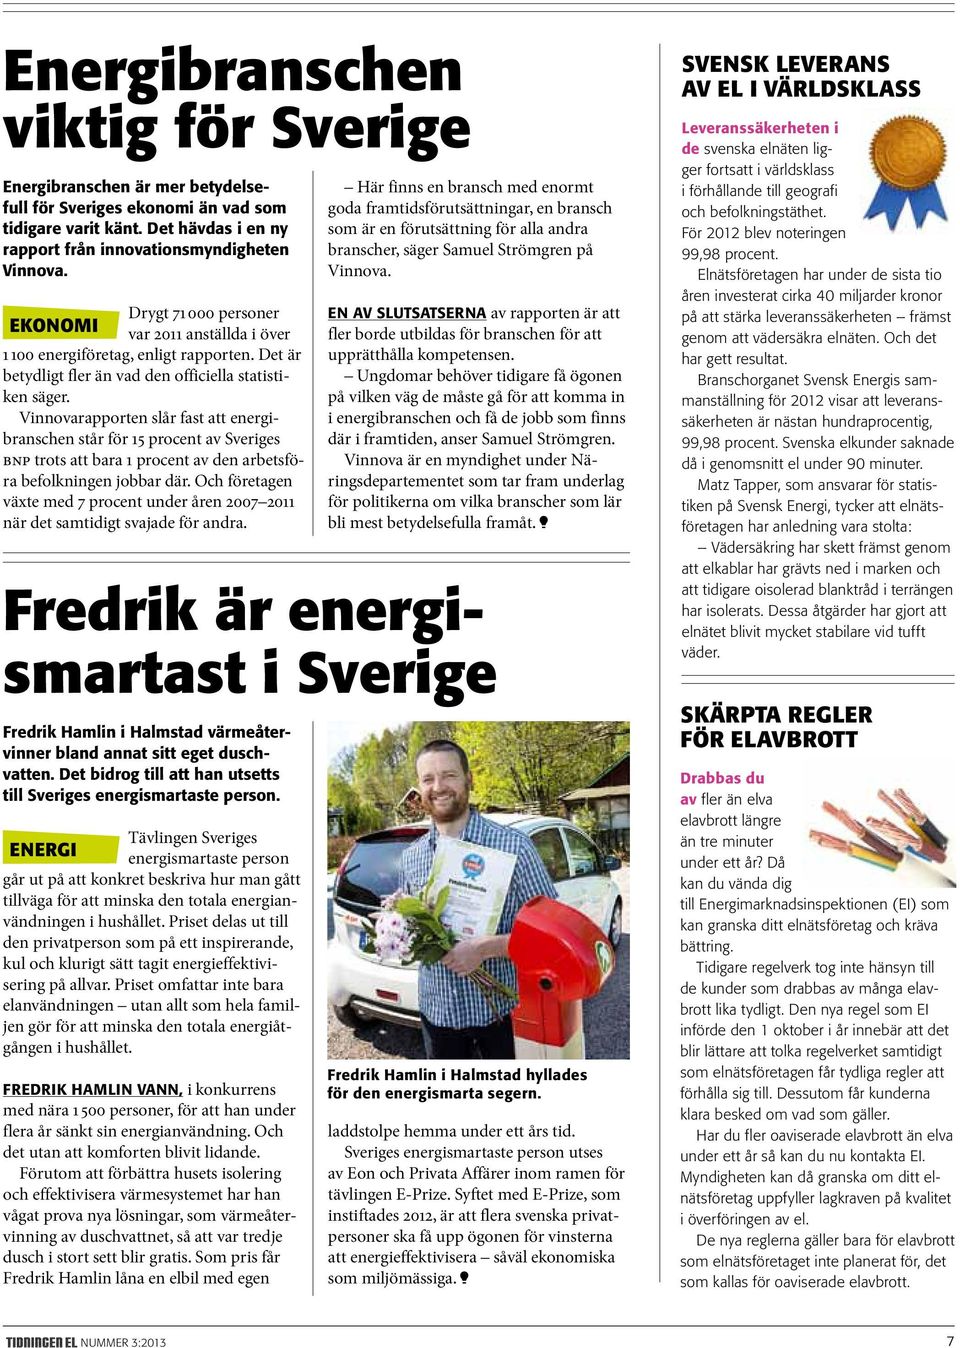 Vinnovarapporten slår fast att energibranschen står för 15 procent av Sveriges bnp trots att bara 1 procent av den arbetsföra befolkningen jobbar där.